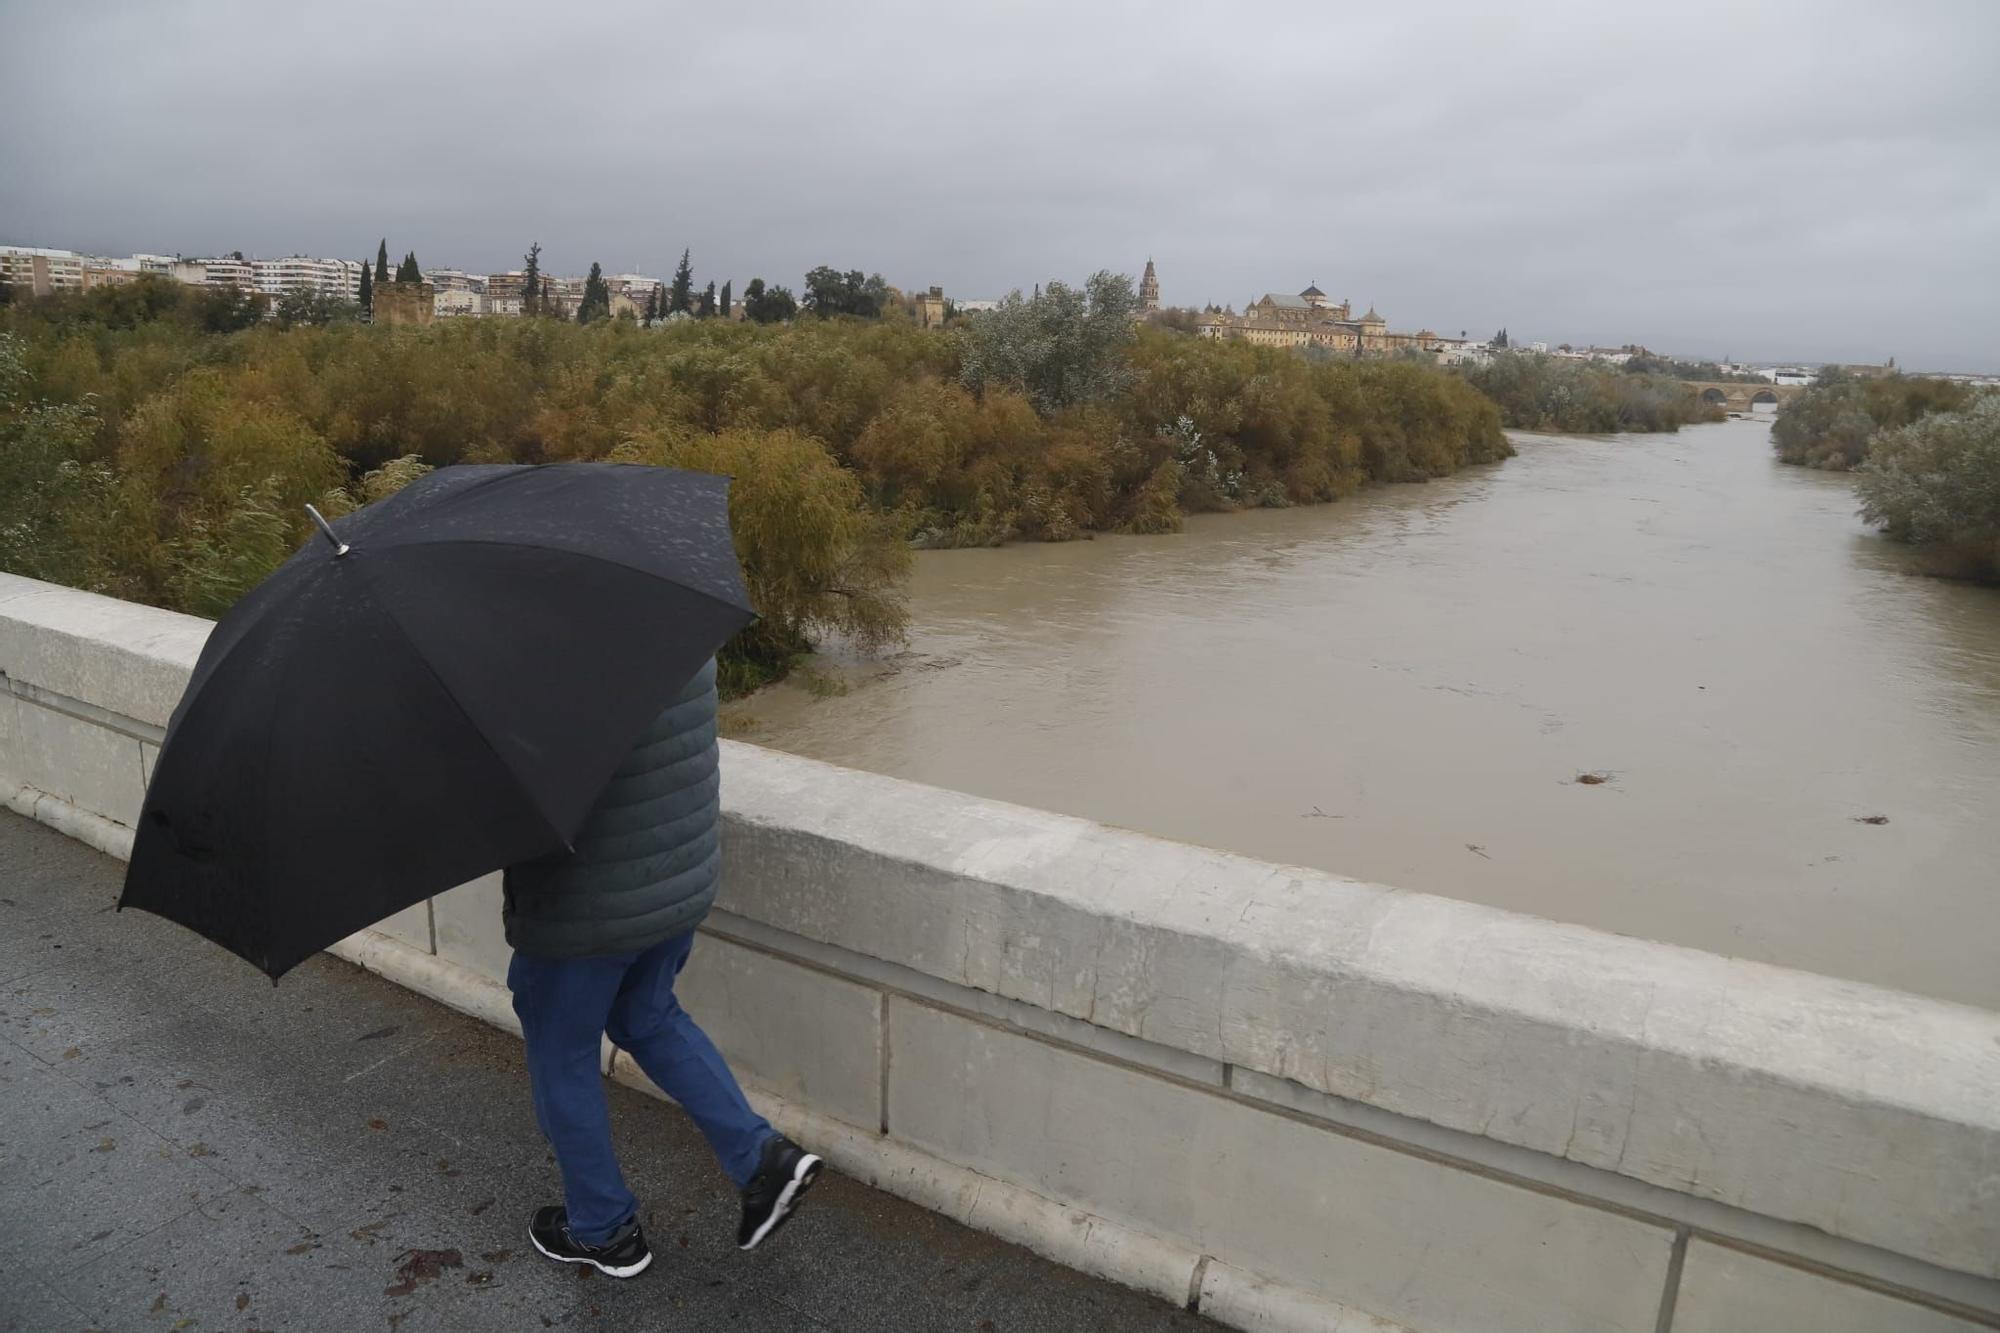 Numerosas incidencias por el temporal de viento y lluvia en Córdoba